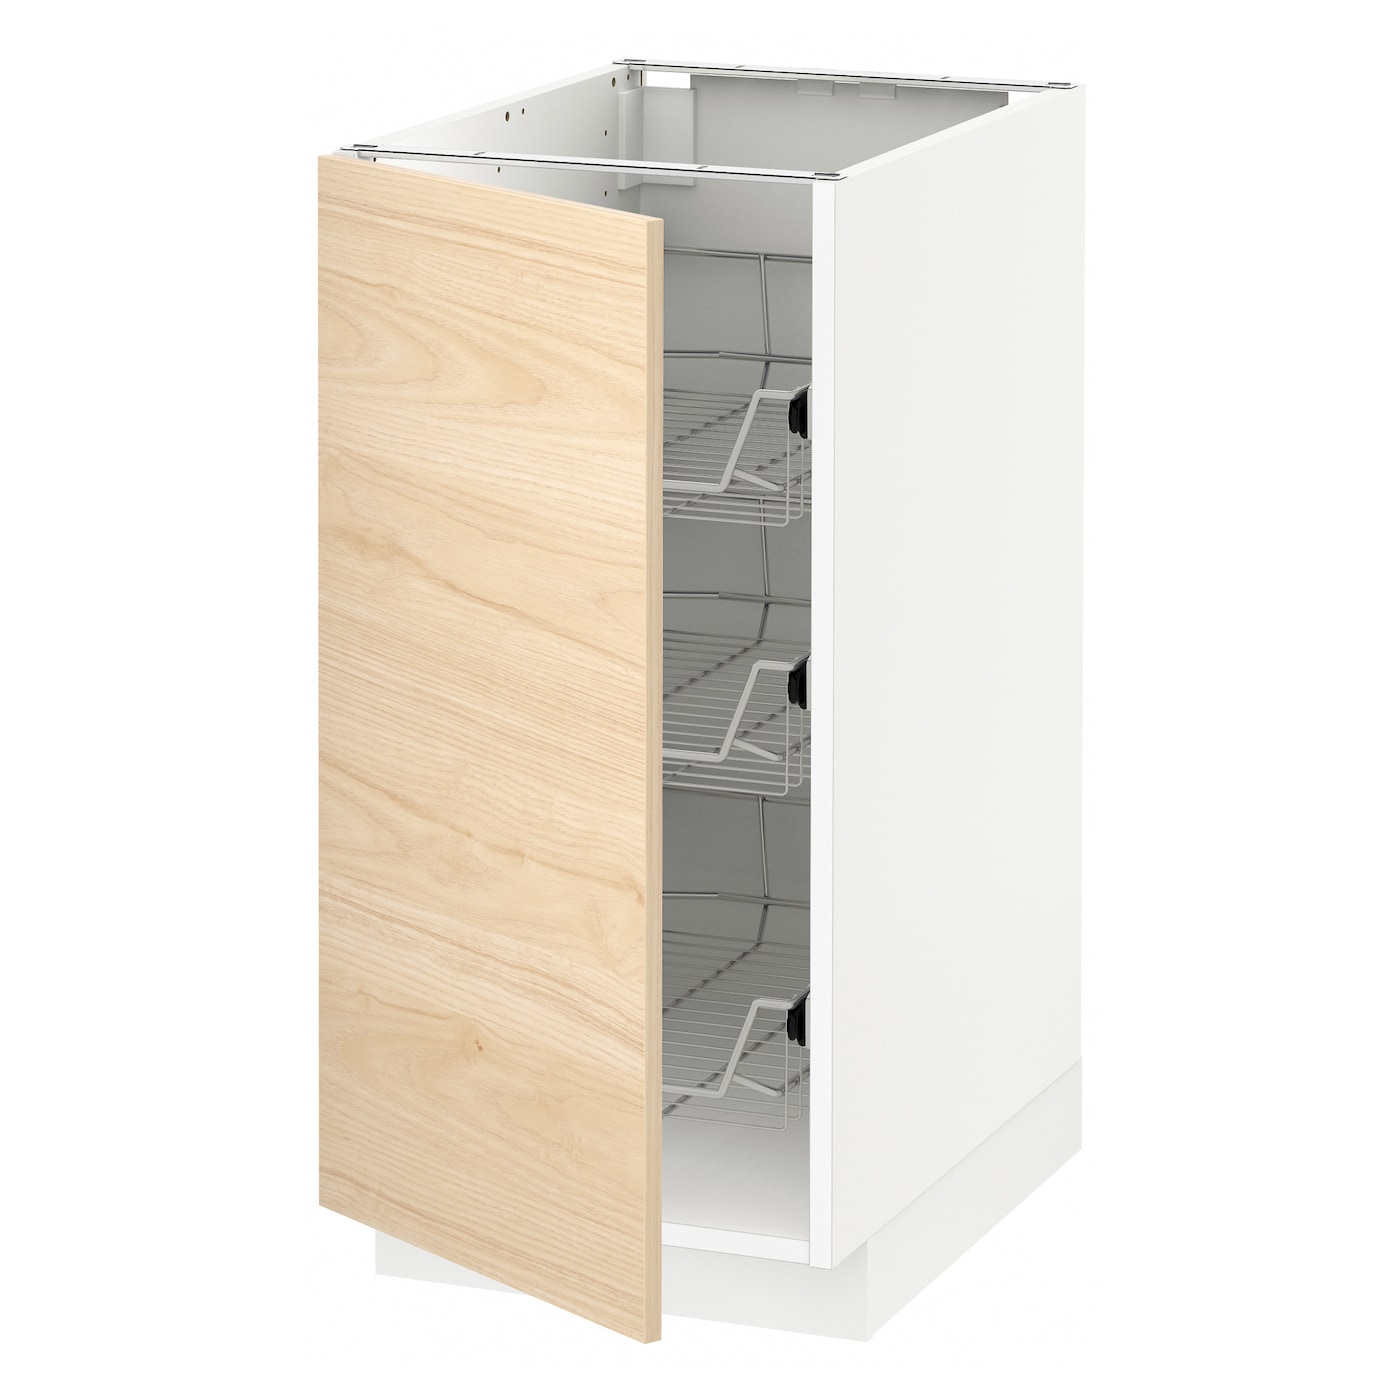 Напольный шкаф - IKEA METOD, 88x62x40см, белый/светлый ясень, МЕТОД ИКЕА